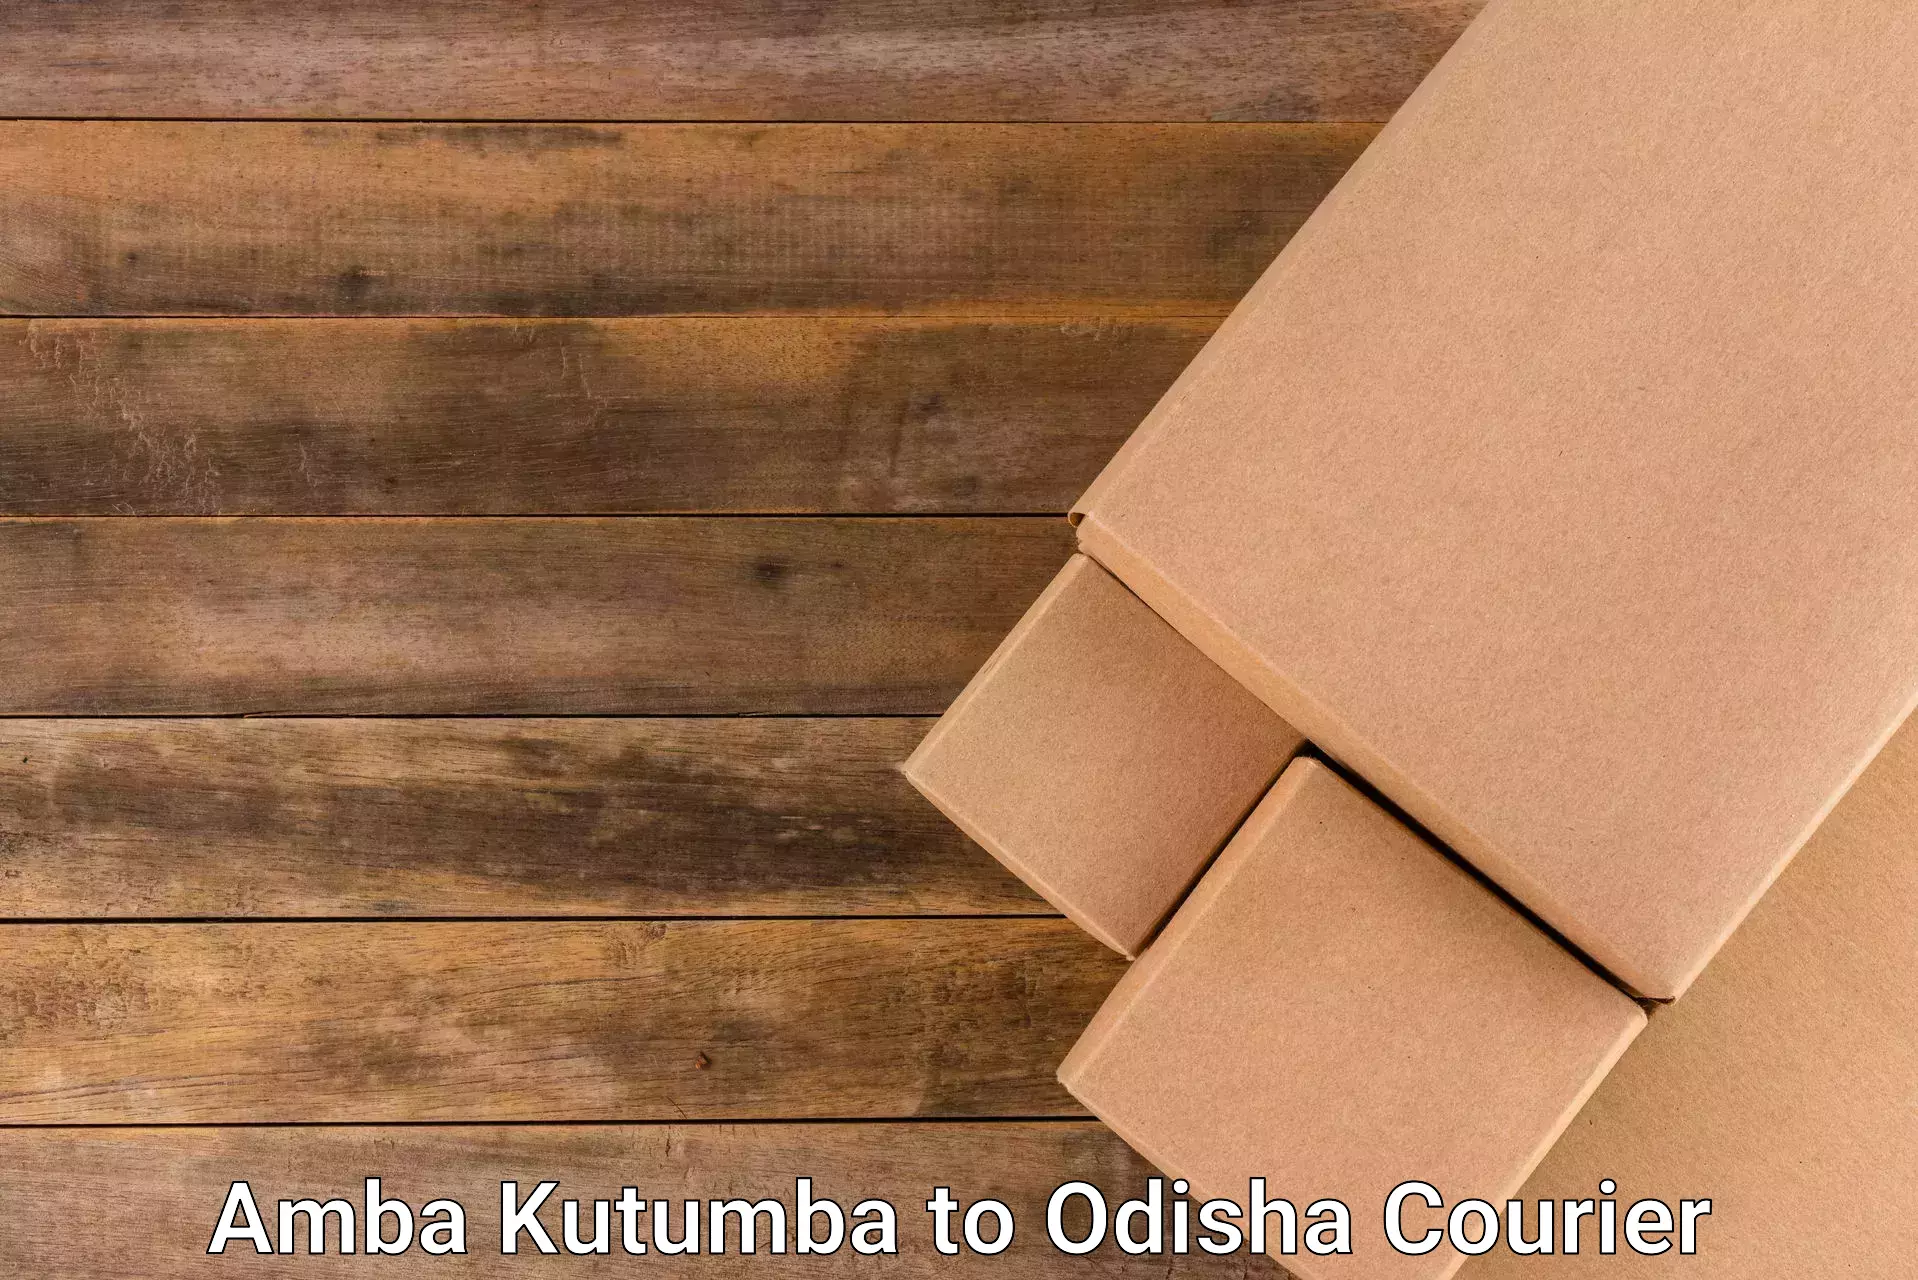 Personalized courier solutions Amba Kutumba to Odisha